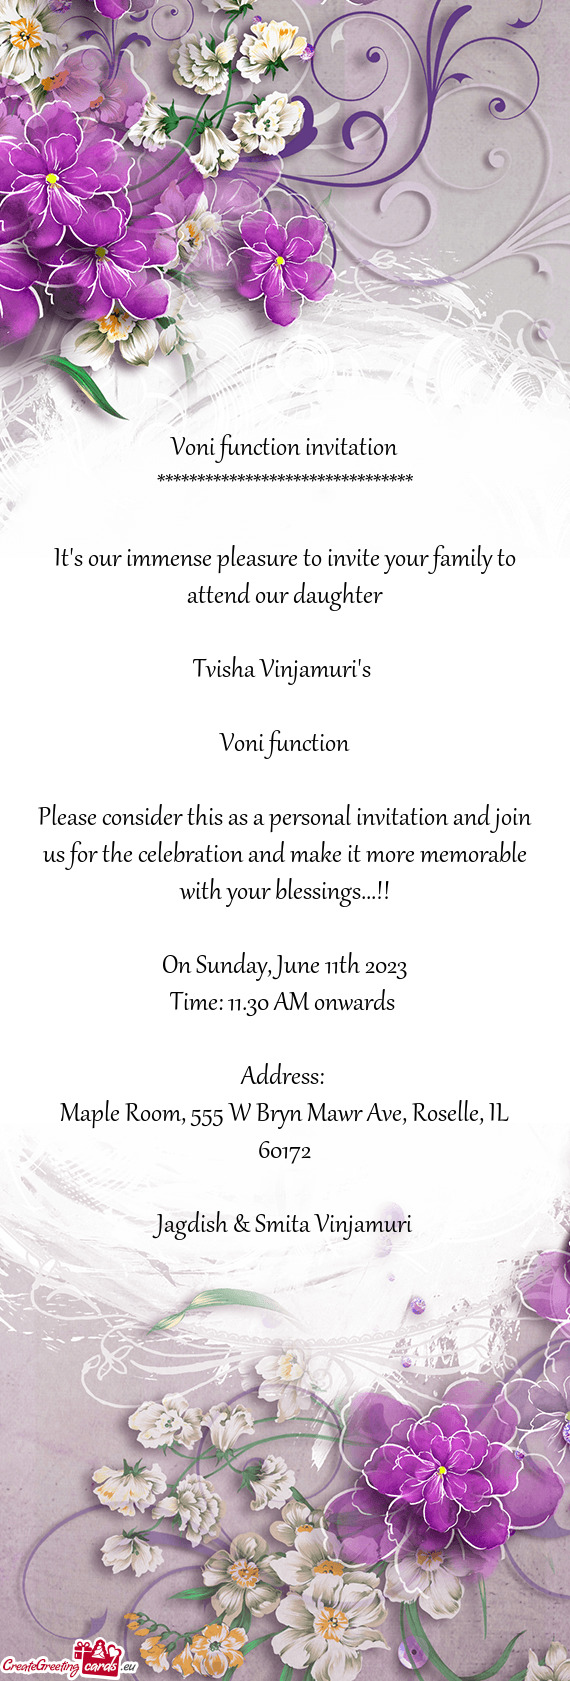 Voni function invitation